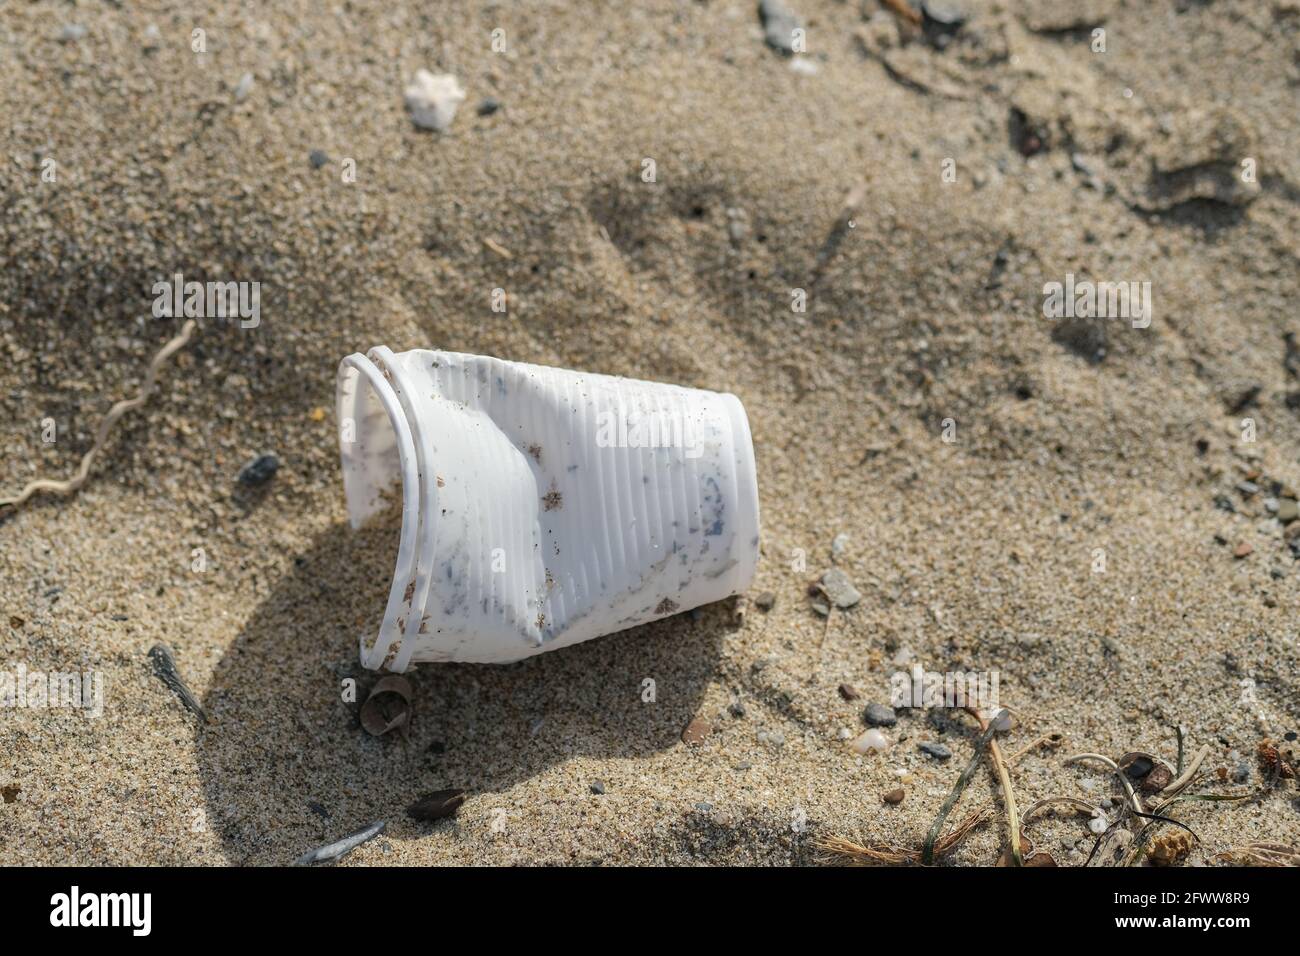 Vaso de plástico desechable desechado en el ecosistema de la costa del mar, contaminación de residuos naturales Foto de stock